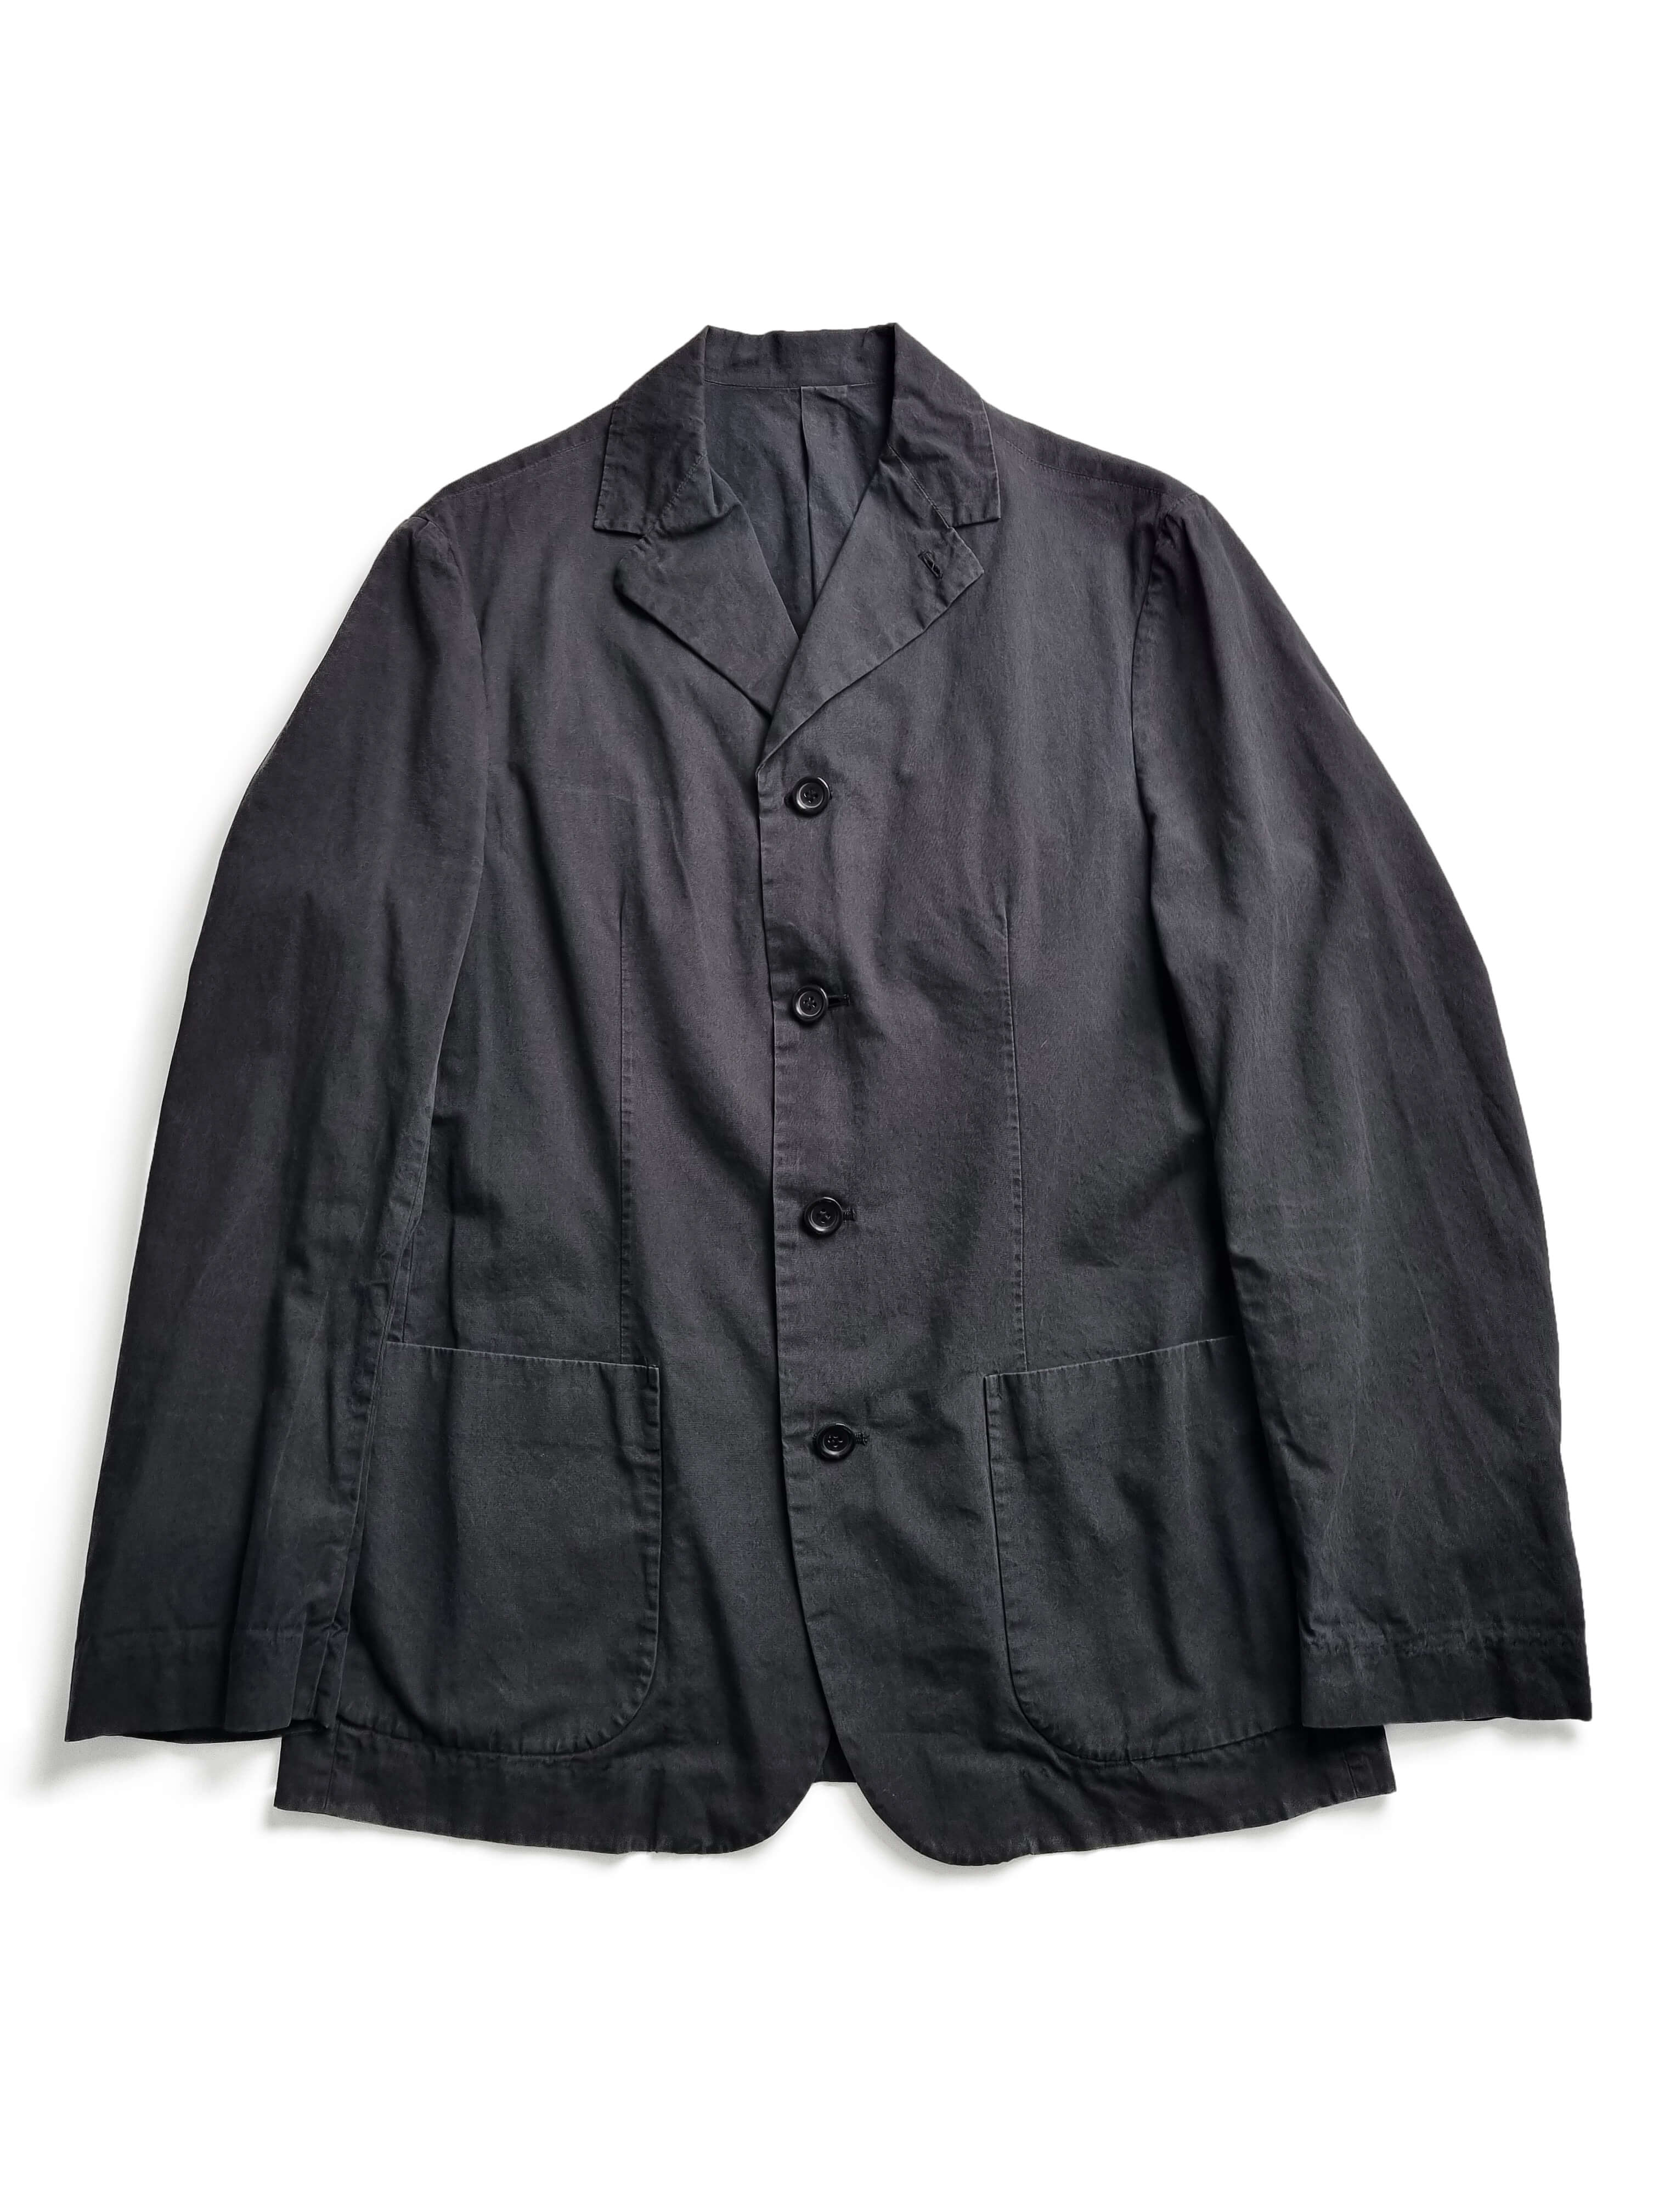 MASAKI MATSUSHIMA HOMME 90s blazer